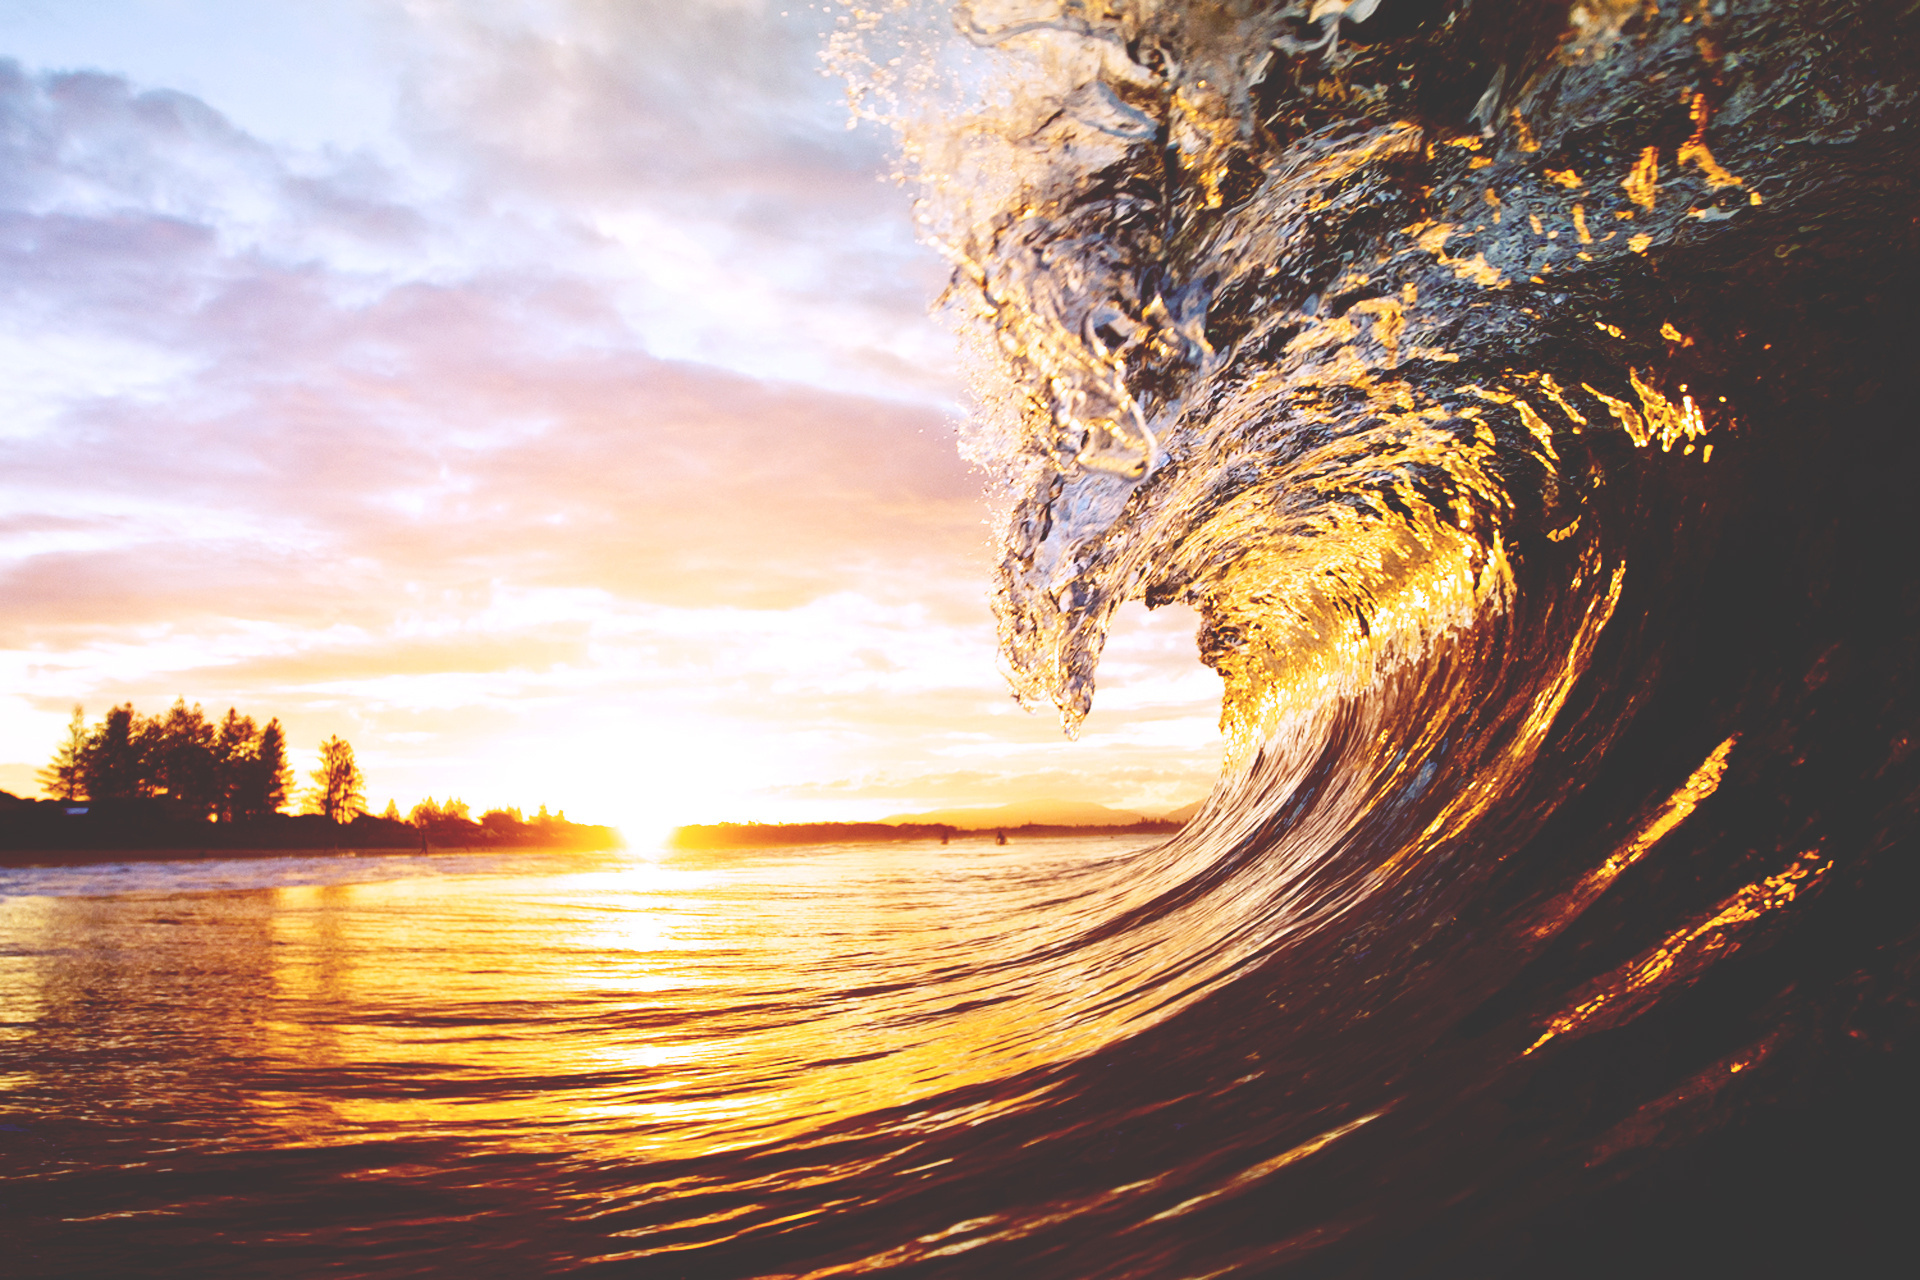 Sóng biển: Trong nhịp nhàng của sóng biển, bạn sẽ cảm nhận được sức mạnh của thiên nhiên cũng như tình yêu và sự kính trọng của con người đối với biển cả. Hãy tìm kiếm những hình ảnh thú vị về sóng biển để cảm nhận được sự tuyệt vời của nó.